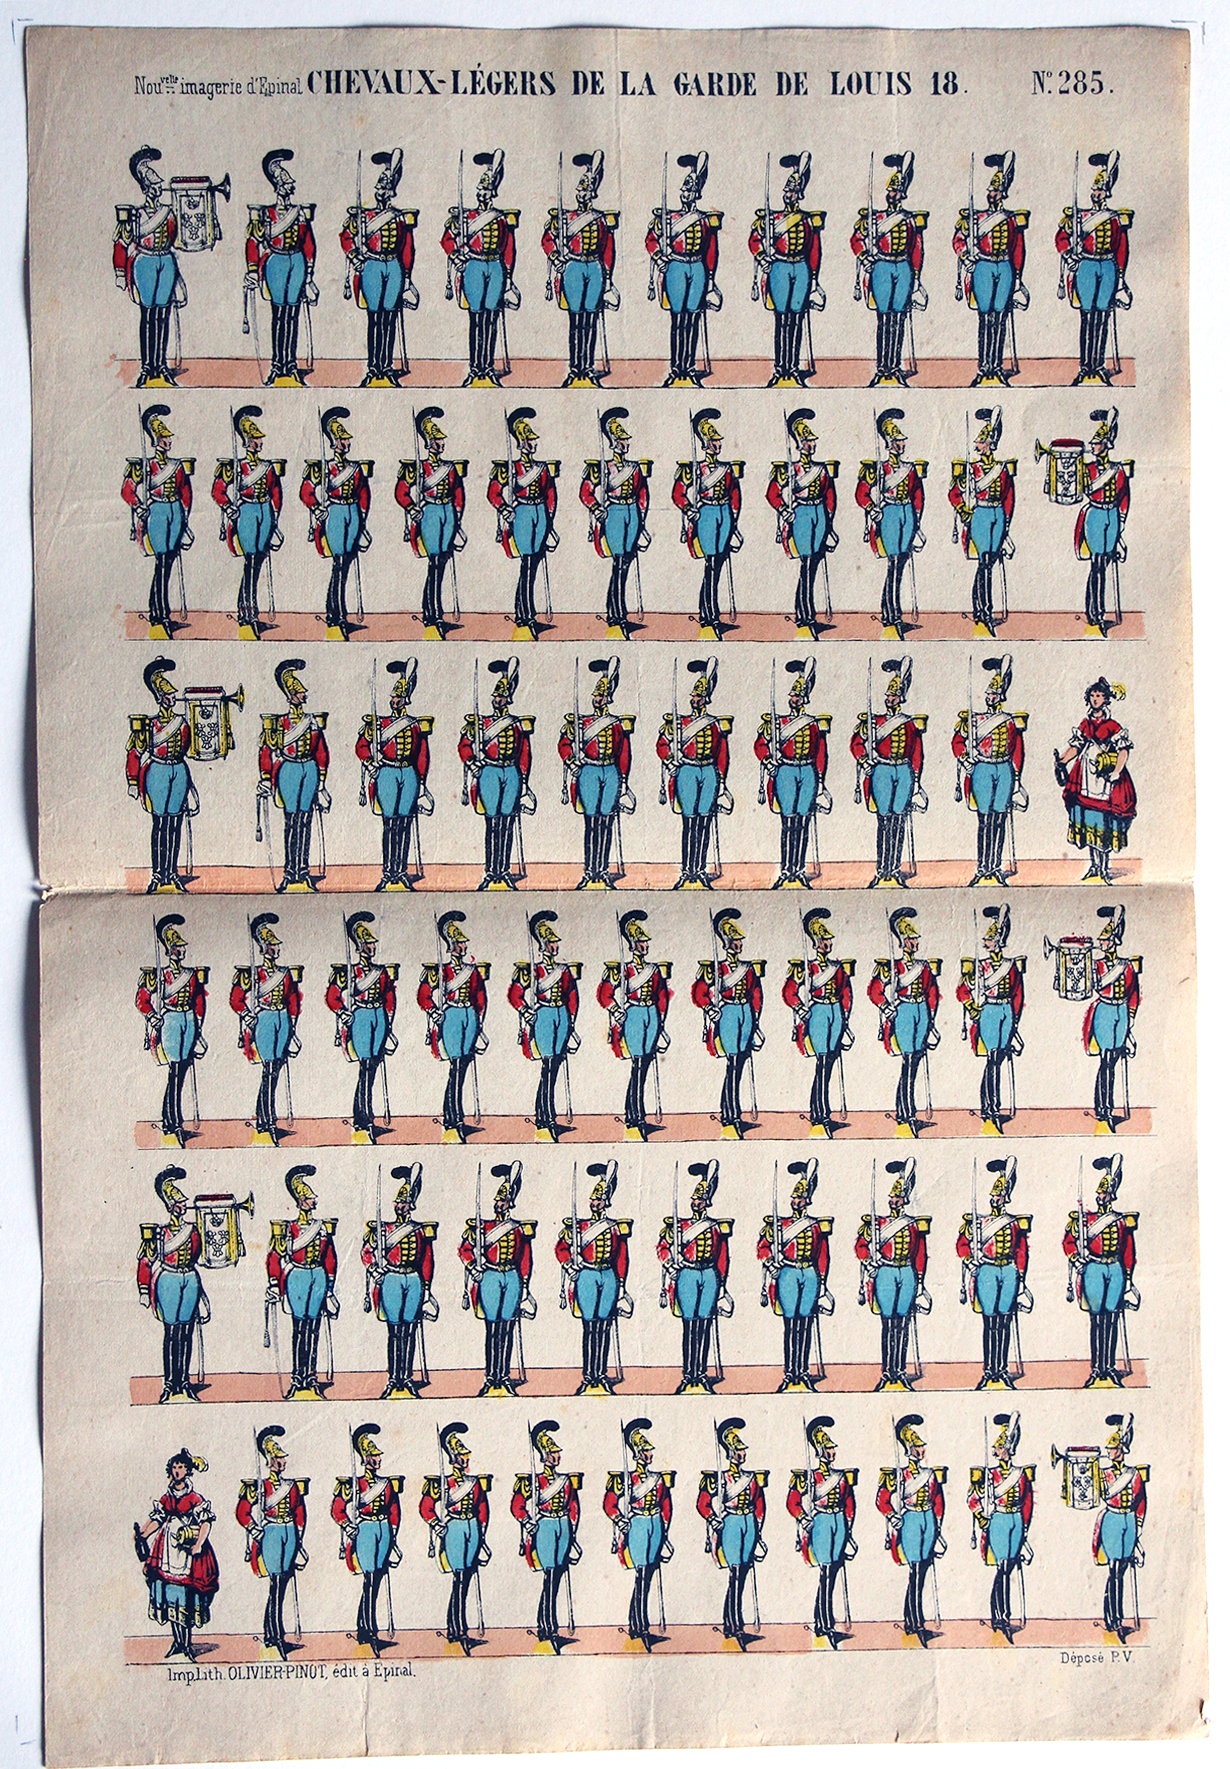 Planche Nouvelle Imagerie Epinal - Chevaux-legers de la Garde de Louis XVIII - N°285